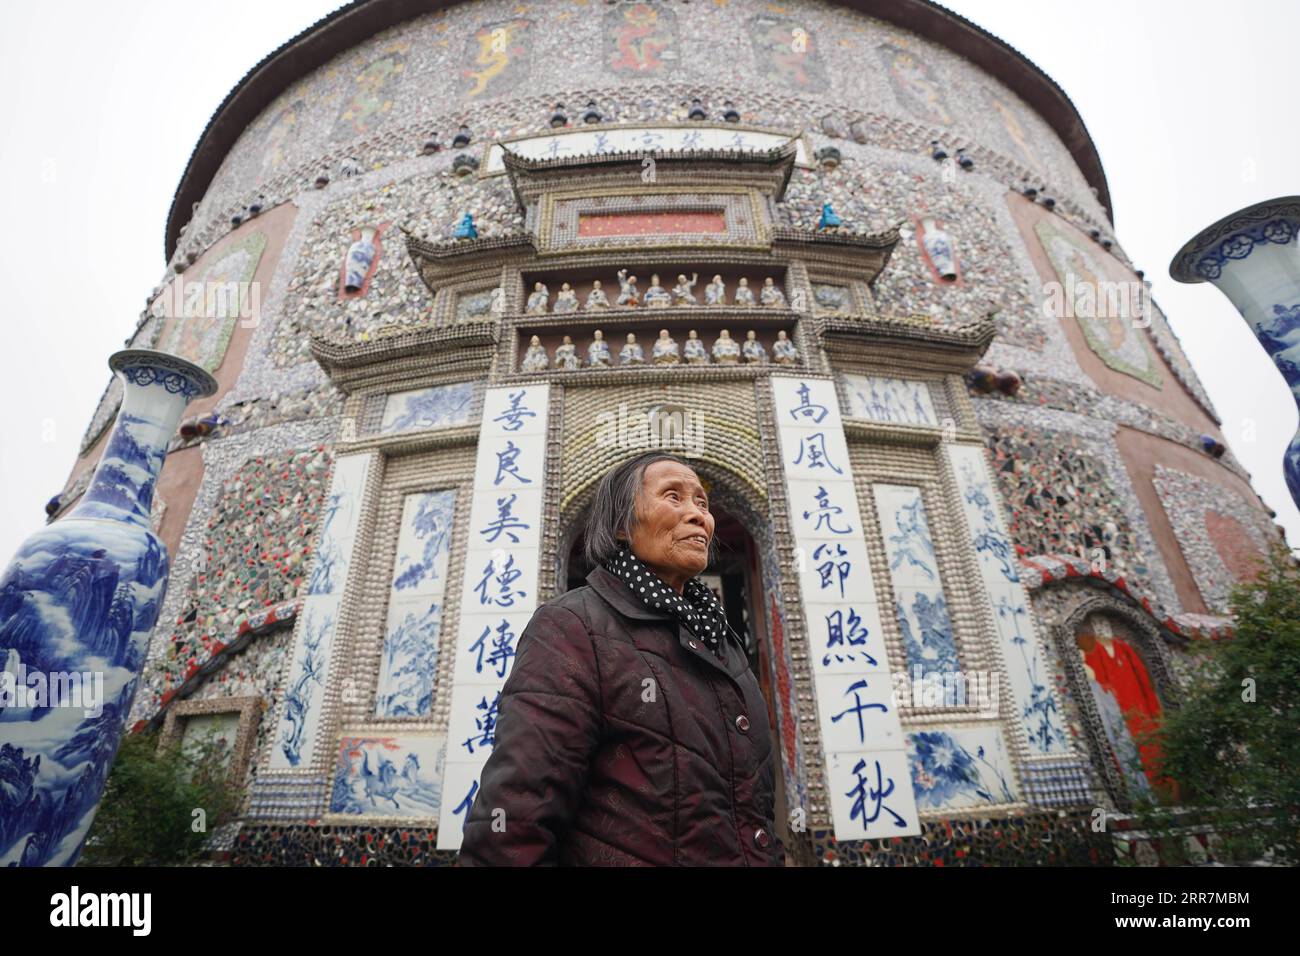 210331 -- NANCHANG, le 31 mars 2021 -- Yu Ermei présente son palais de porcelaine aux visiteurs du village de Xinping du comté de Fuliang à Jingdezhen, dans la province de Jiangxi dans l'est de la Chine, le 19 mars 2021. Yu Ermei, une villageoise de 91 ans qui travaillait autrefois dans une manufacture de porcelaine, a commencé à construire ses palais de porcelaine dans le village de Xinping à partir de 2011. Grâce à ses efforts, quatre bâtiments décorés de porcelaine et de pièces de porcelaine se dressent maintenant dans le village, attirant de nombreux touristes à visiter. CHINE-JIANGXI-JINGDEZHEN-PORCELAINE PALACESCN ZhouxMi PUBLICATIONxNOTxINxCHN Banque D'Images